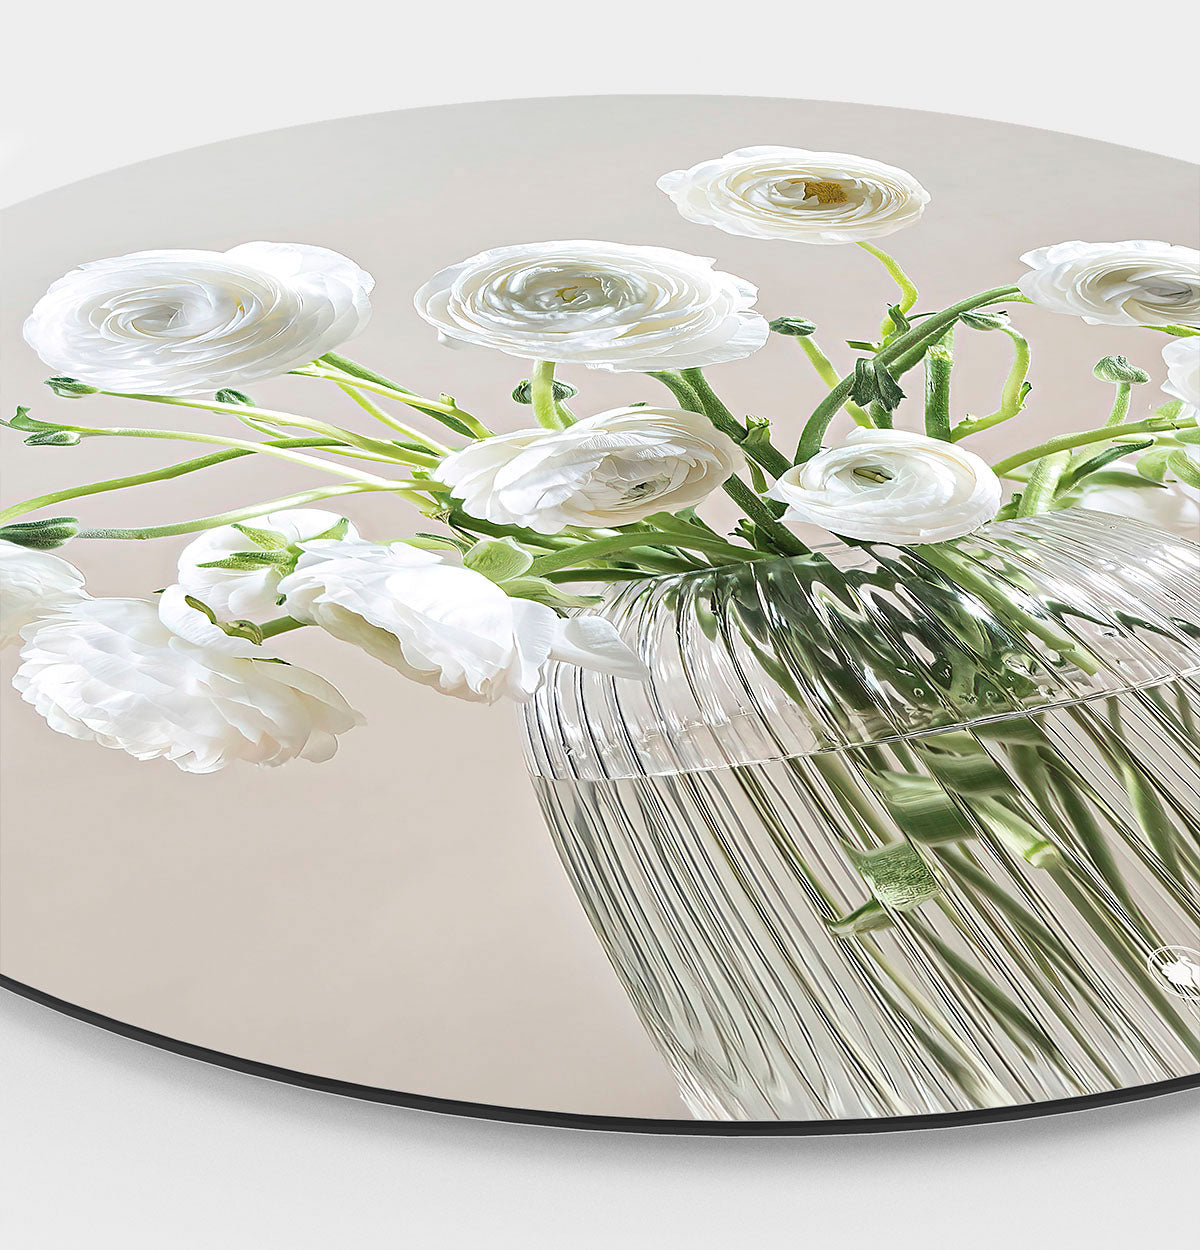 Muurcirkel met een glazen vaas met witte bloemen met een lichte achtergrond